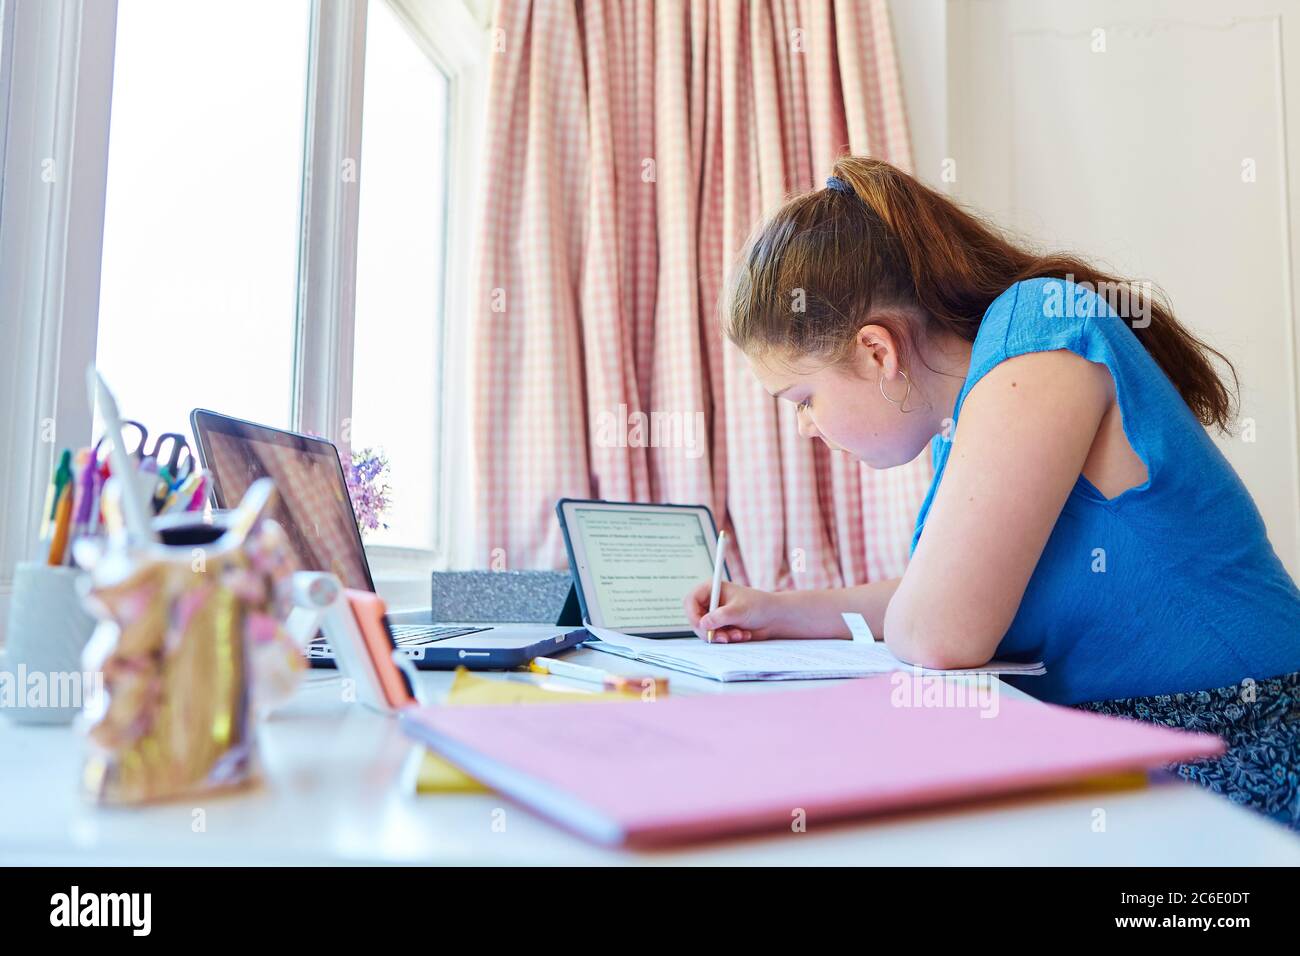 Girl homeschooling at desk in bedroom Stock Photo